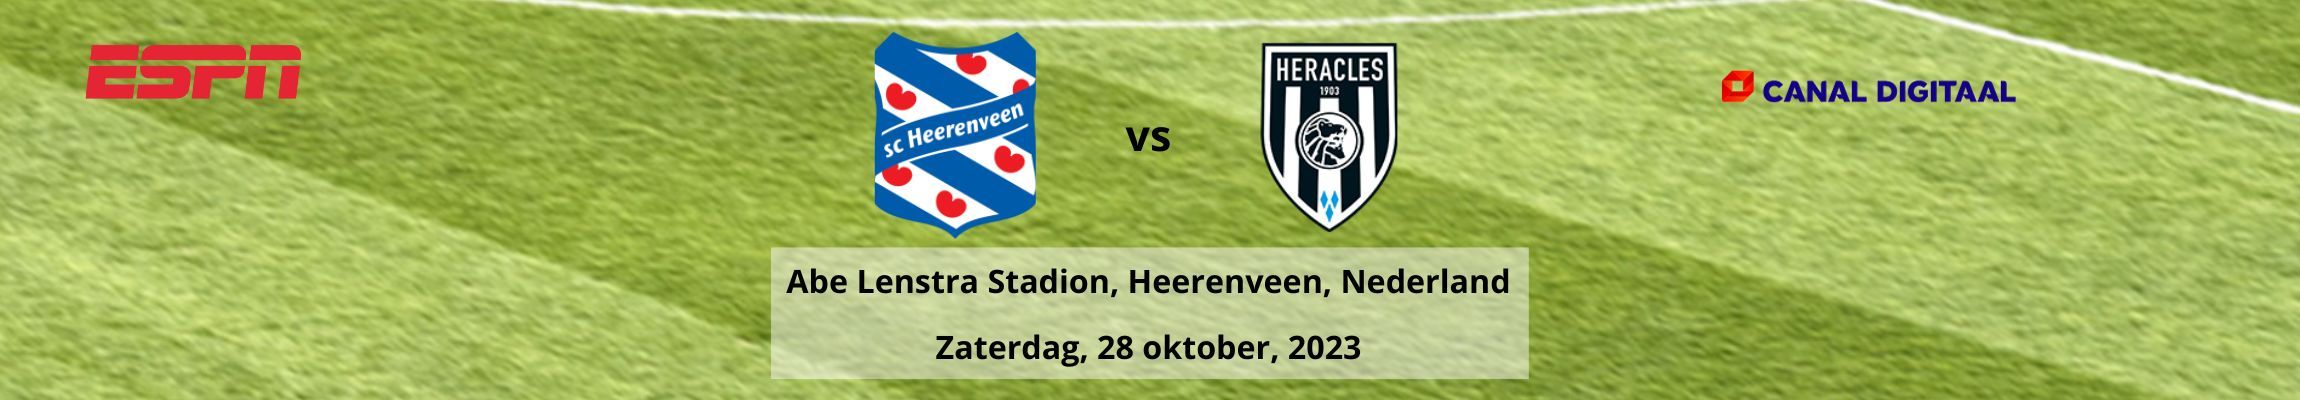 SC Heerenveen vs Heracles